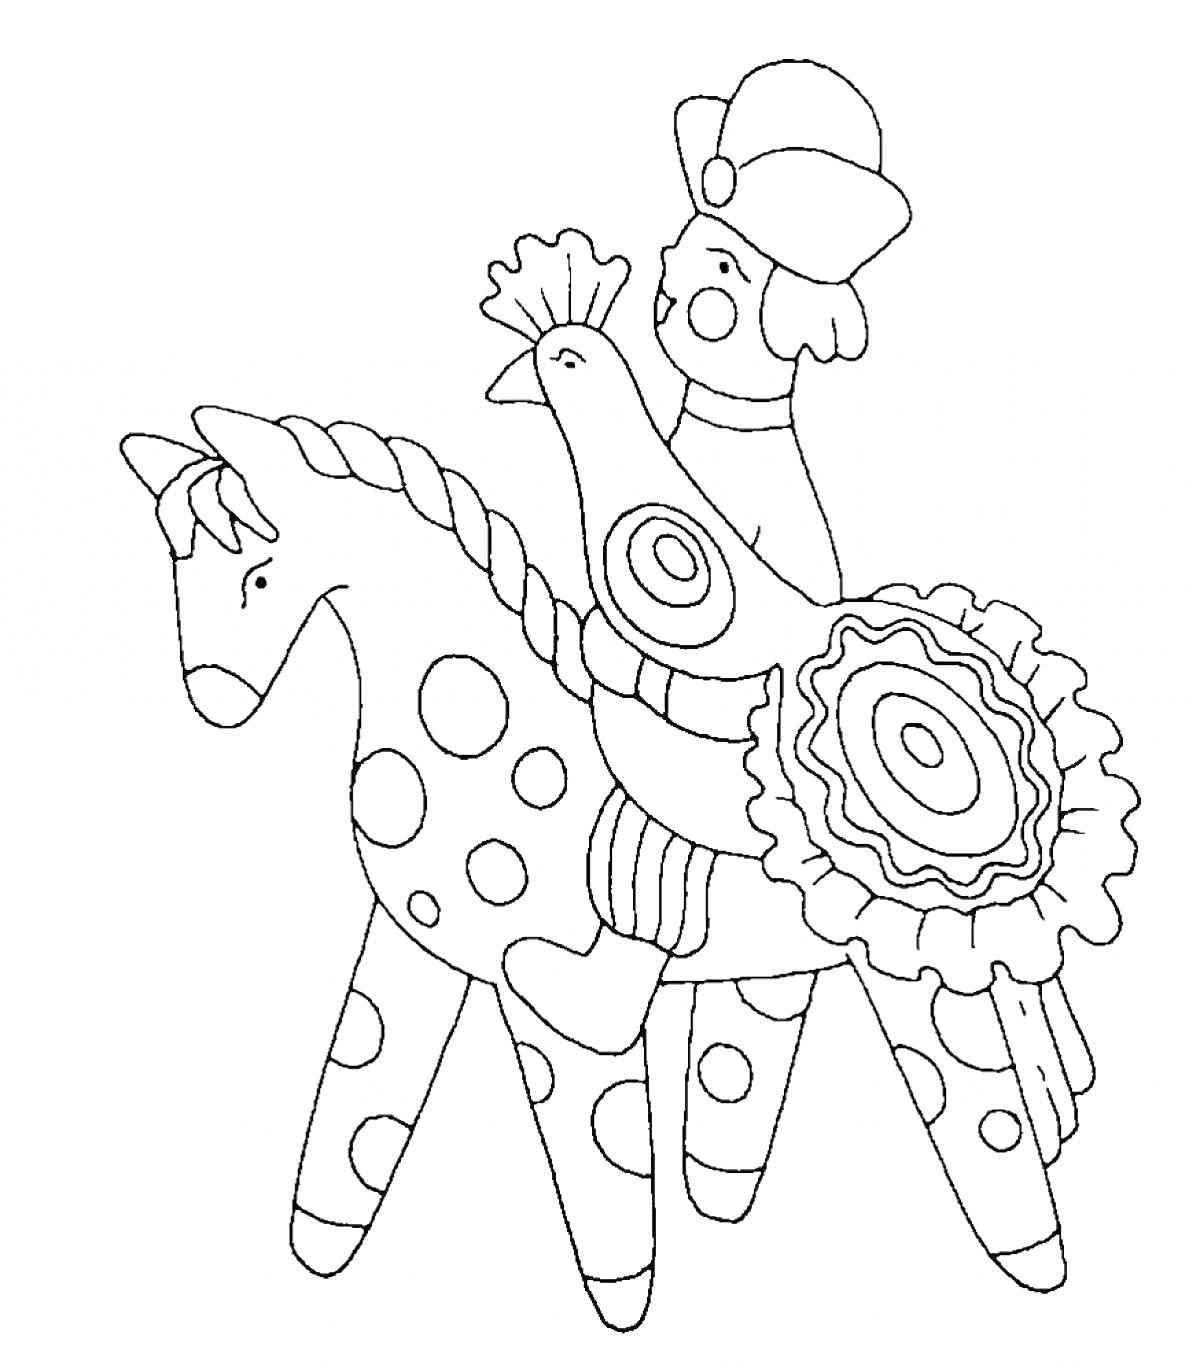 Раскраска Человек на лошади с петухом в дымковском стиле